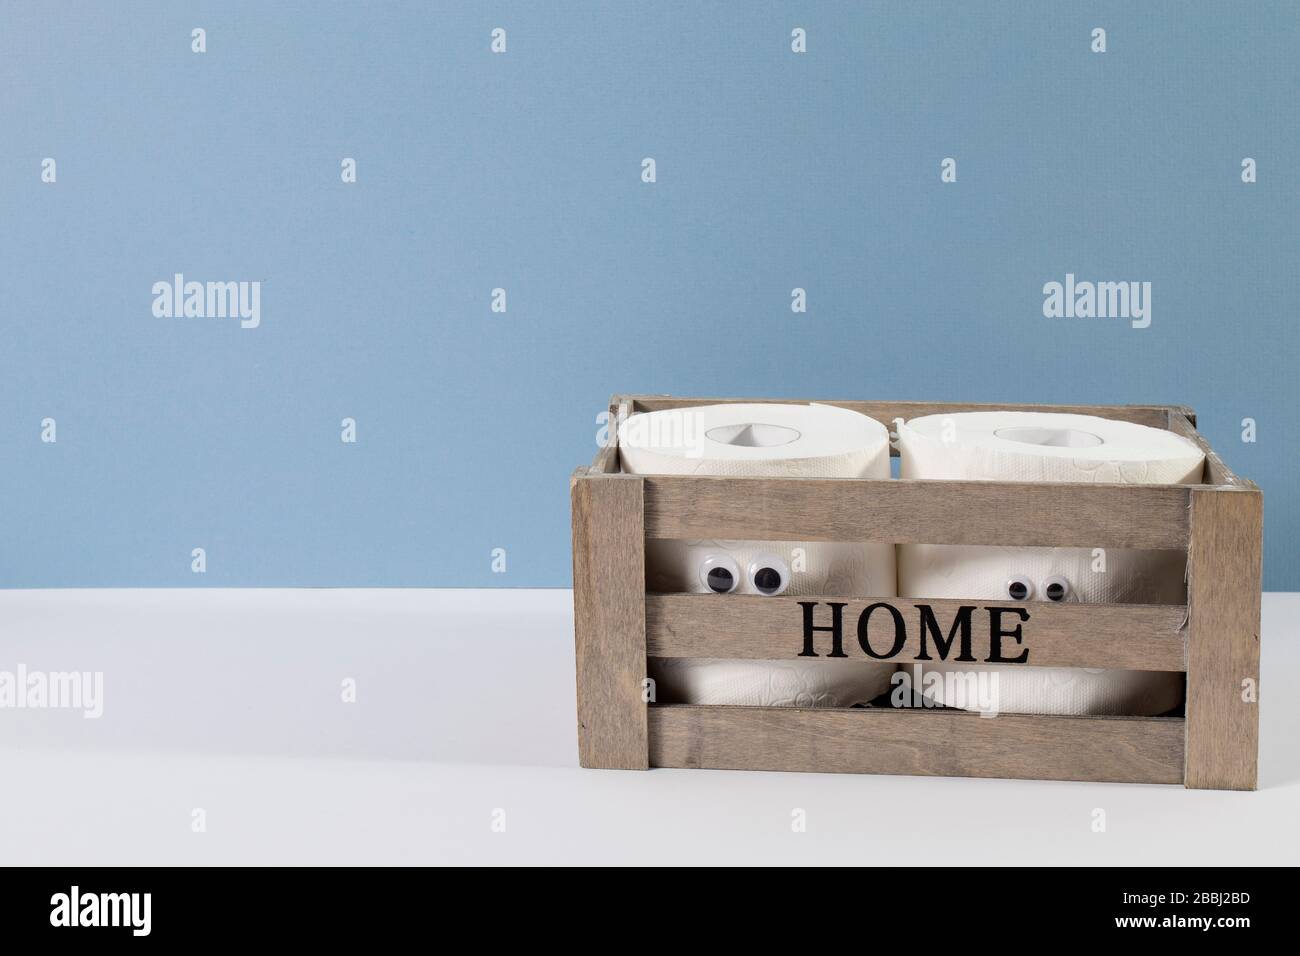 Deux rouleaux de papier toilette avec yeux artificiels dans une boîte en bois avec l'inscription Home sur le fond bleu gris Banque D'Images